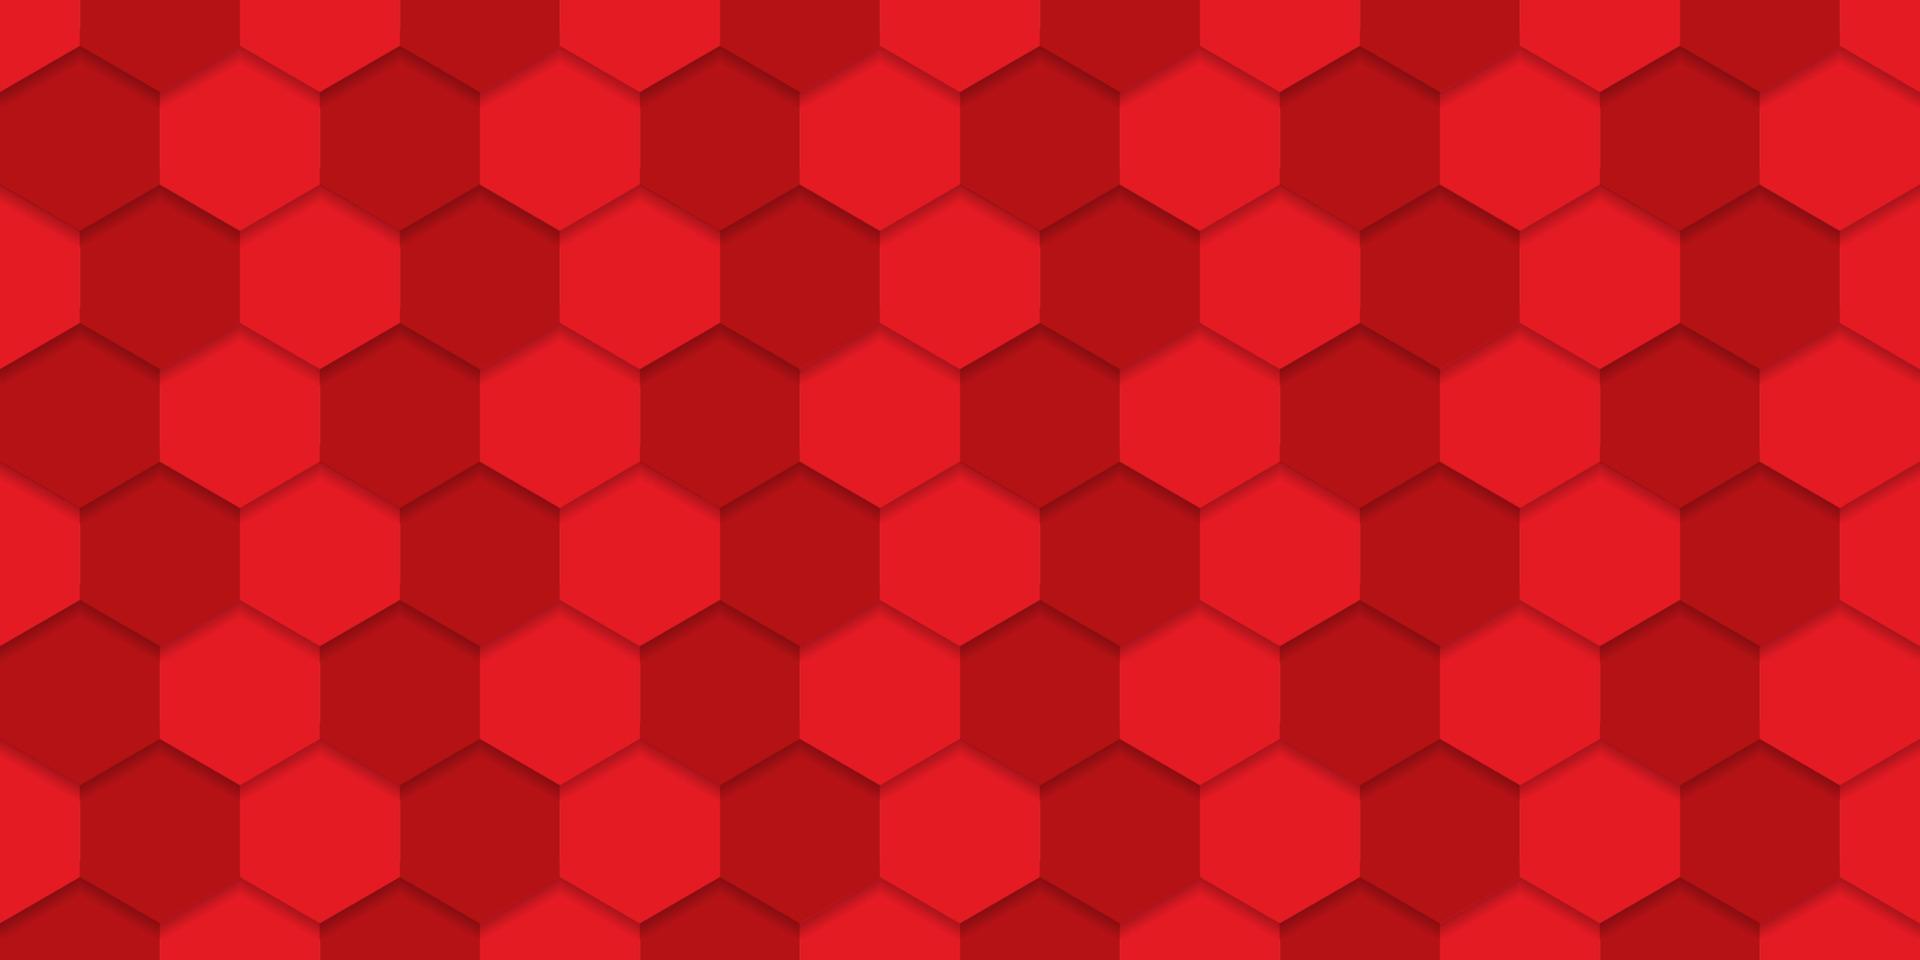 ljusrött hexagon modernt mönster. ljus hex textur. digital tom banner för teknik, vetenskap, kemi. sexkantig röd futuristisk bakgrund. modern tapetdesign. vektor illustration.